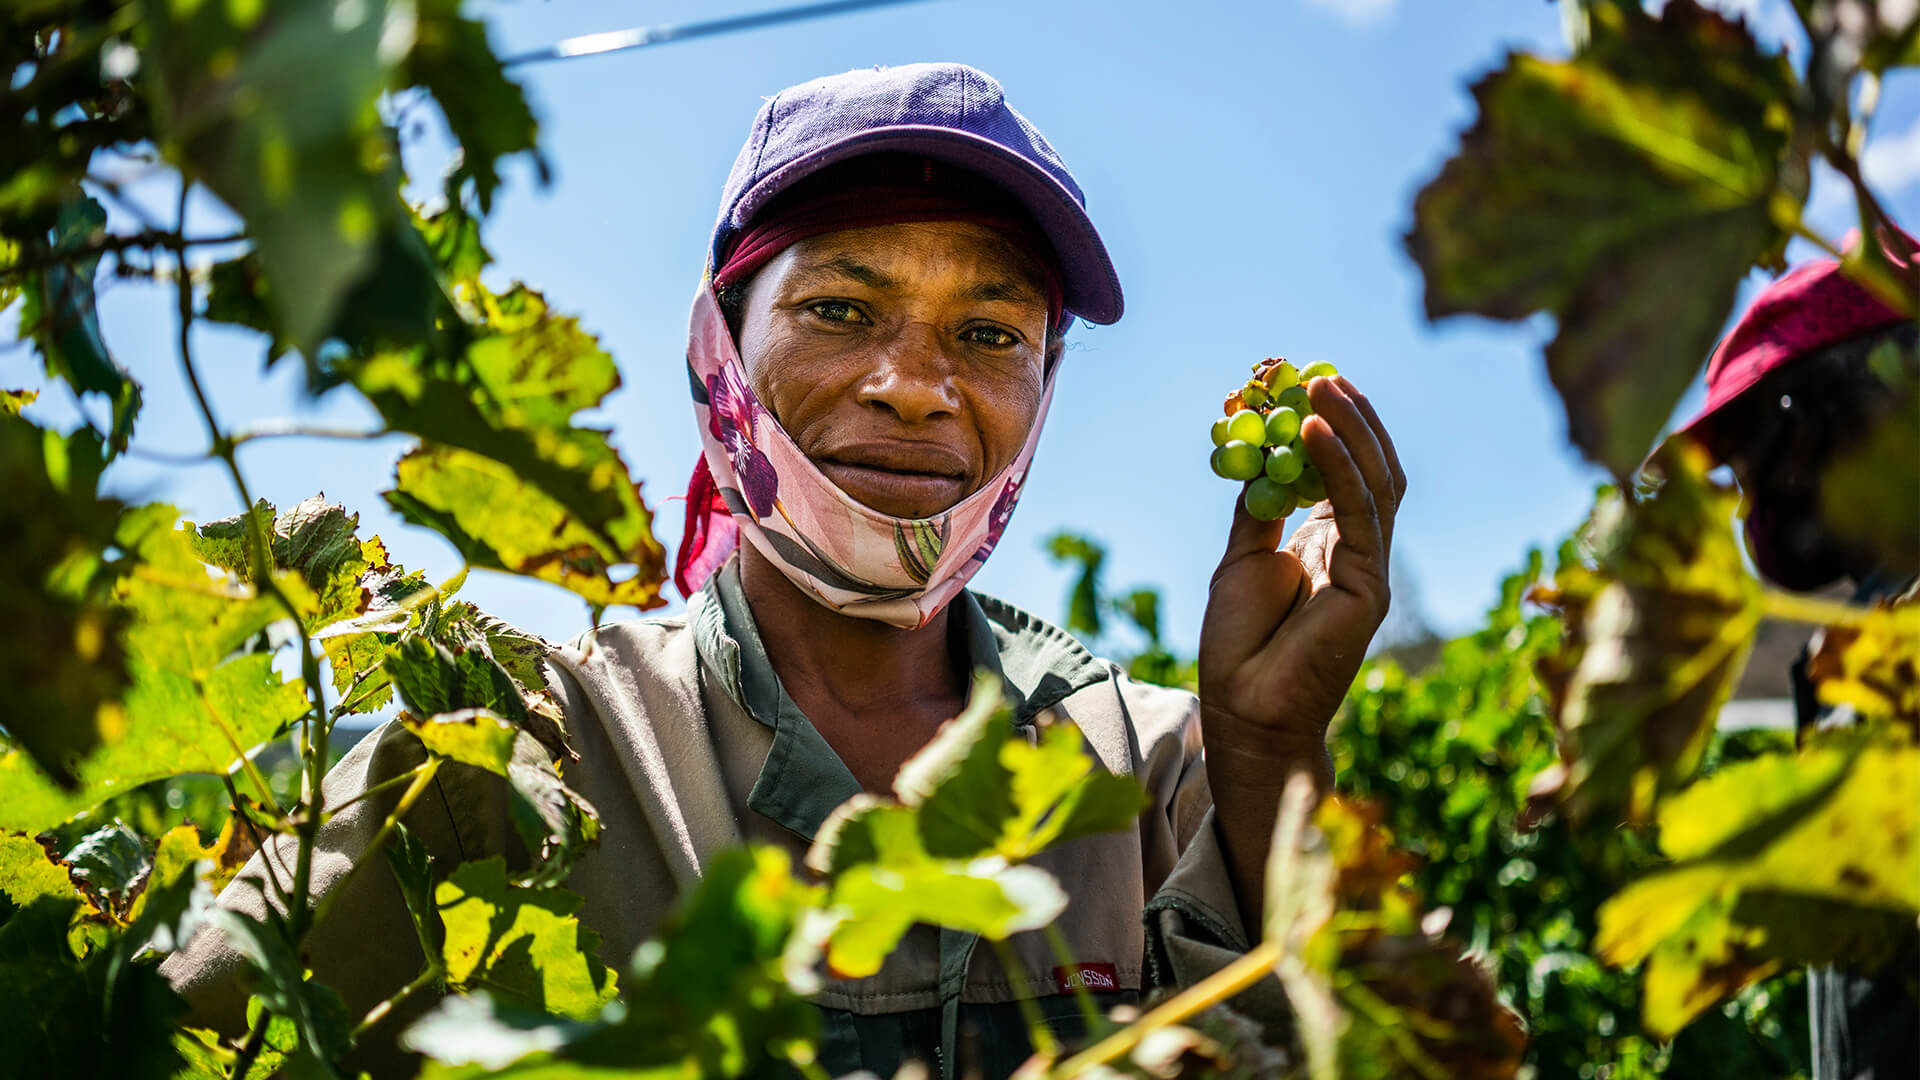 Kuvassa Sharmine Prescense, joka työskentelee Van Loveren -viinitilan työntekijänä Etelä-Afrikassa, jossa valmistetaan Reilun kaupan viiniä. Hänellä on kädessä viinirypäleitä.